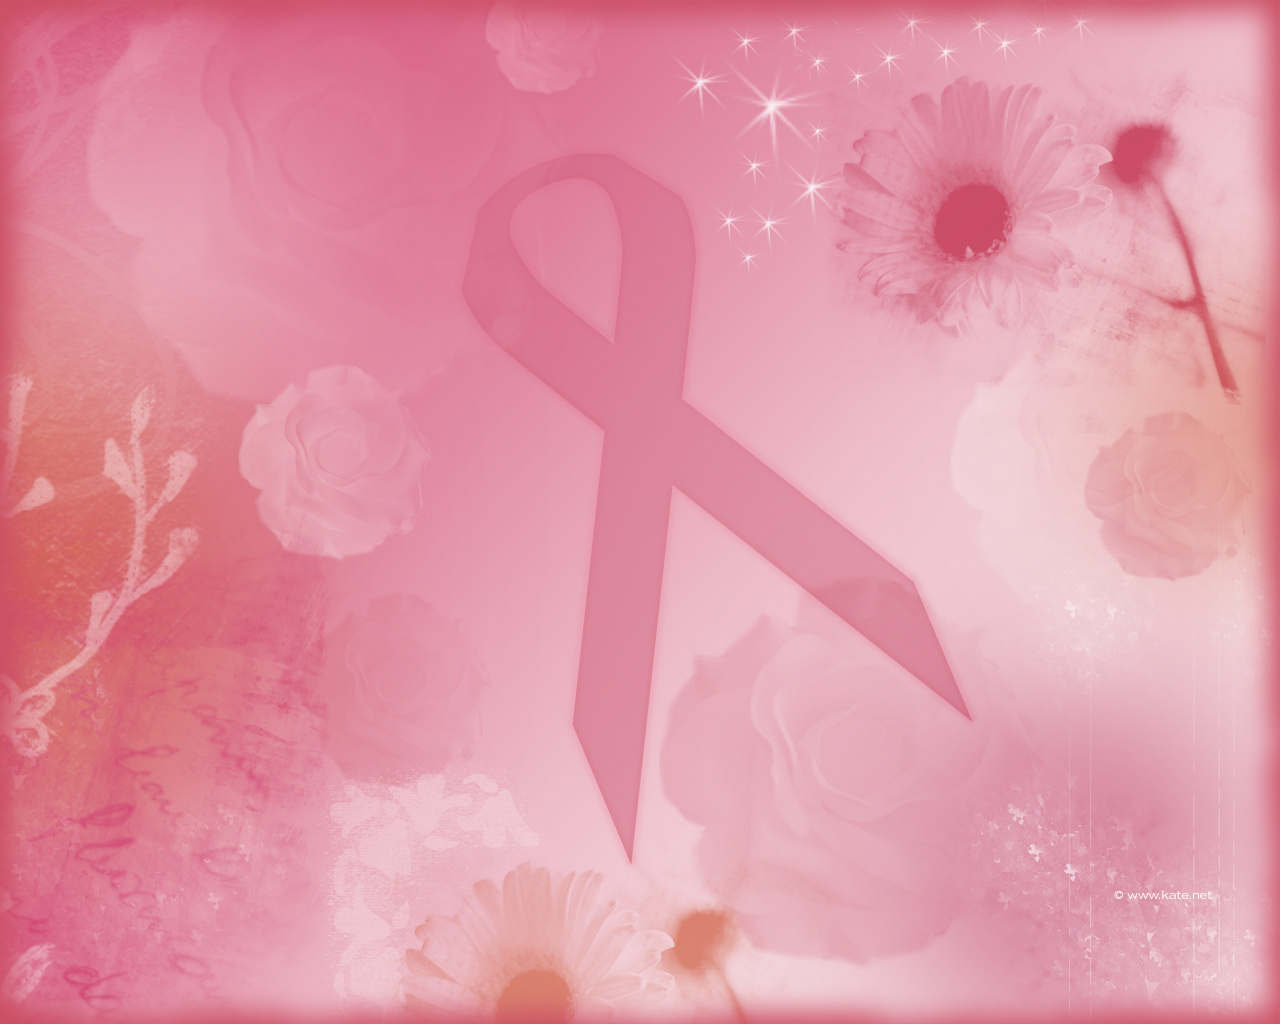 Φιλανθρωπική συναυλία για τη στήριξη απόρων γυναικών με καρκίνο του μαστού